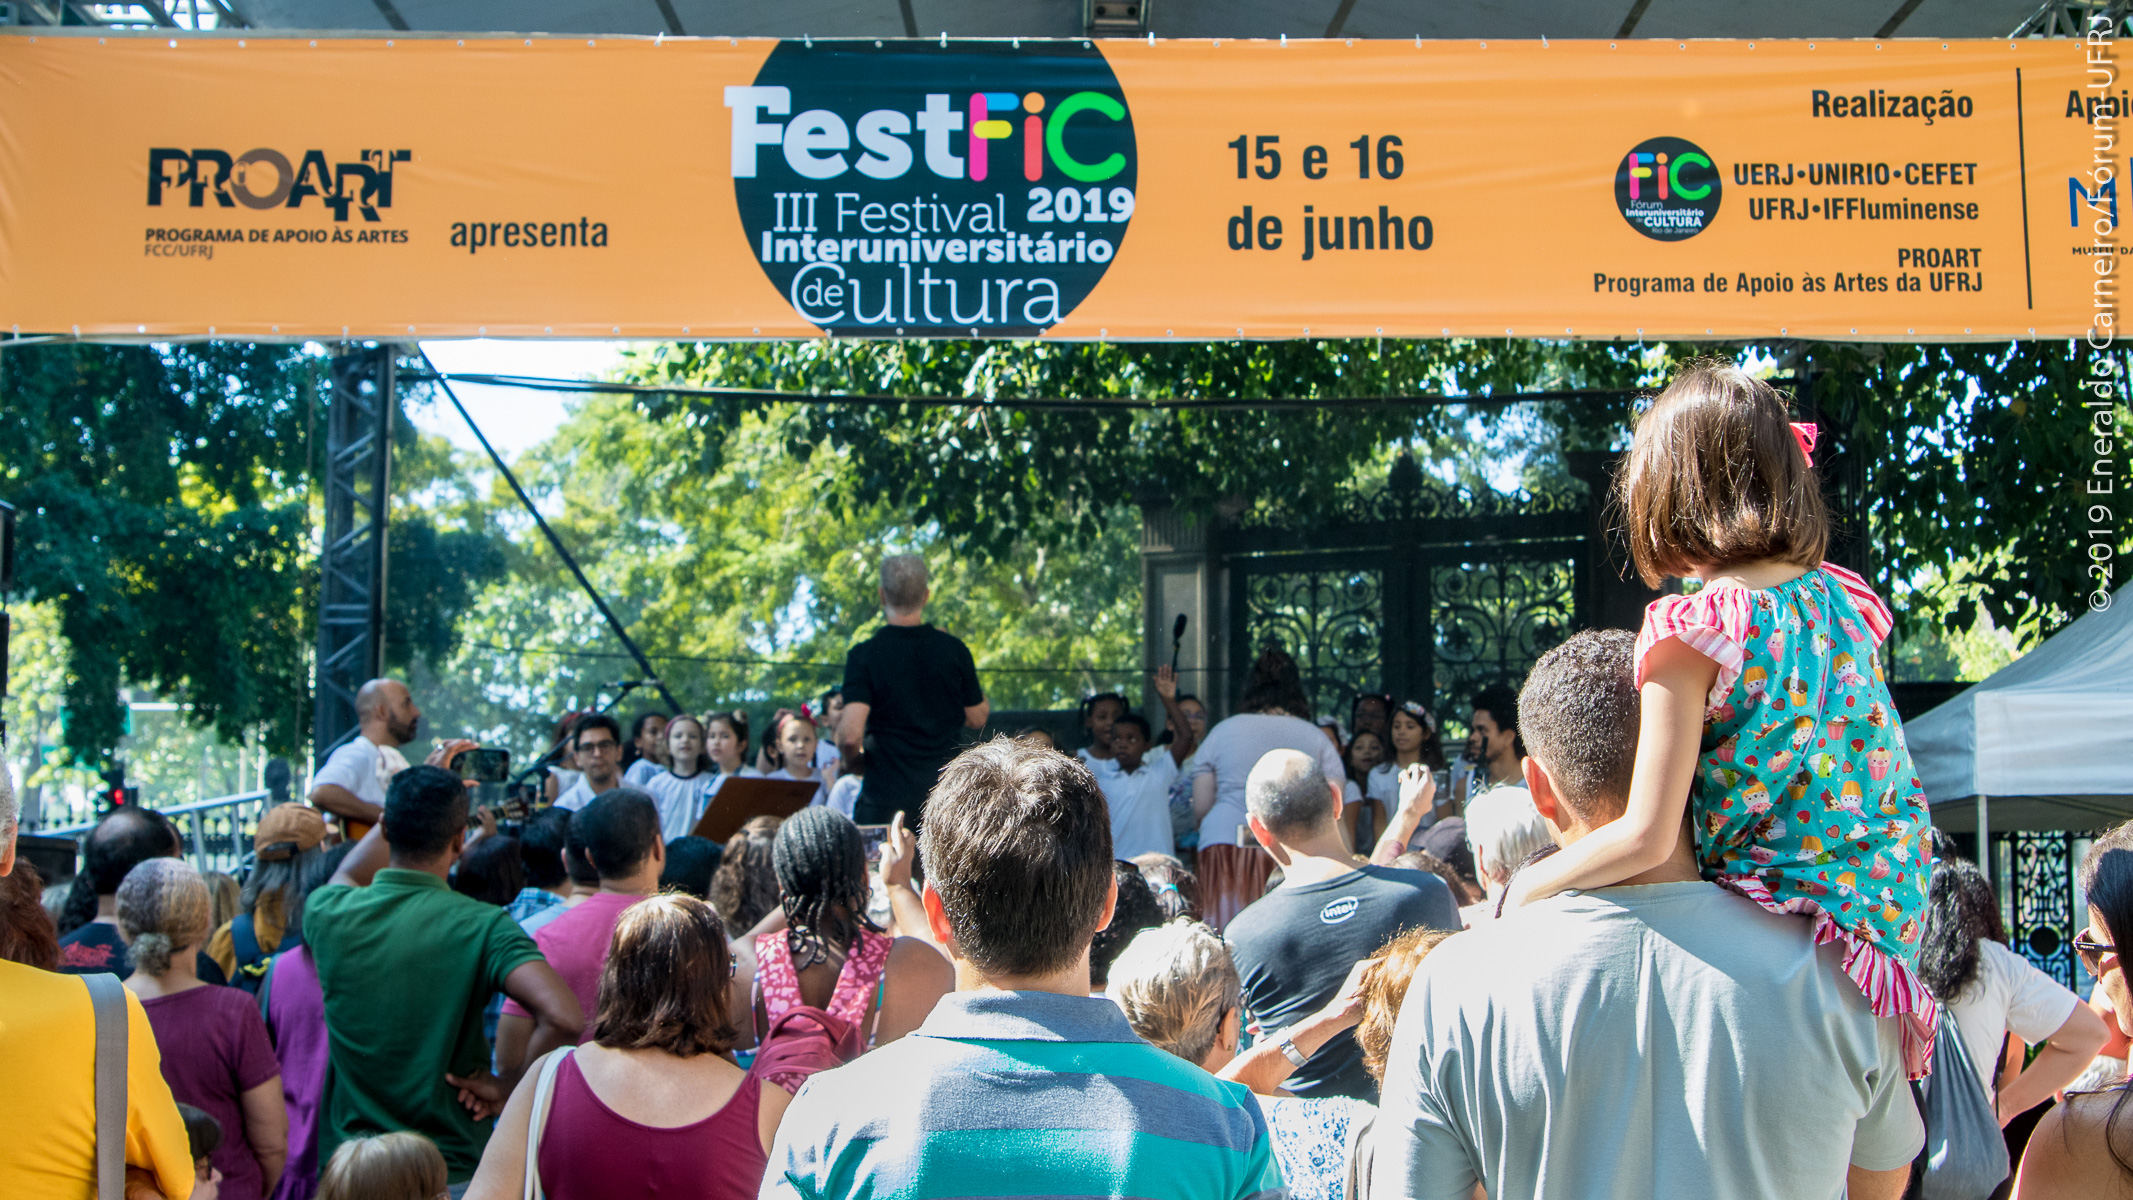 FestFIC 2019 promove arte e cultura no Museu da República, reunindo público de todas as idades